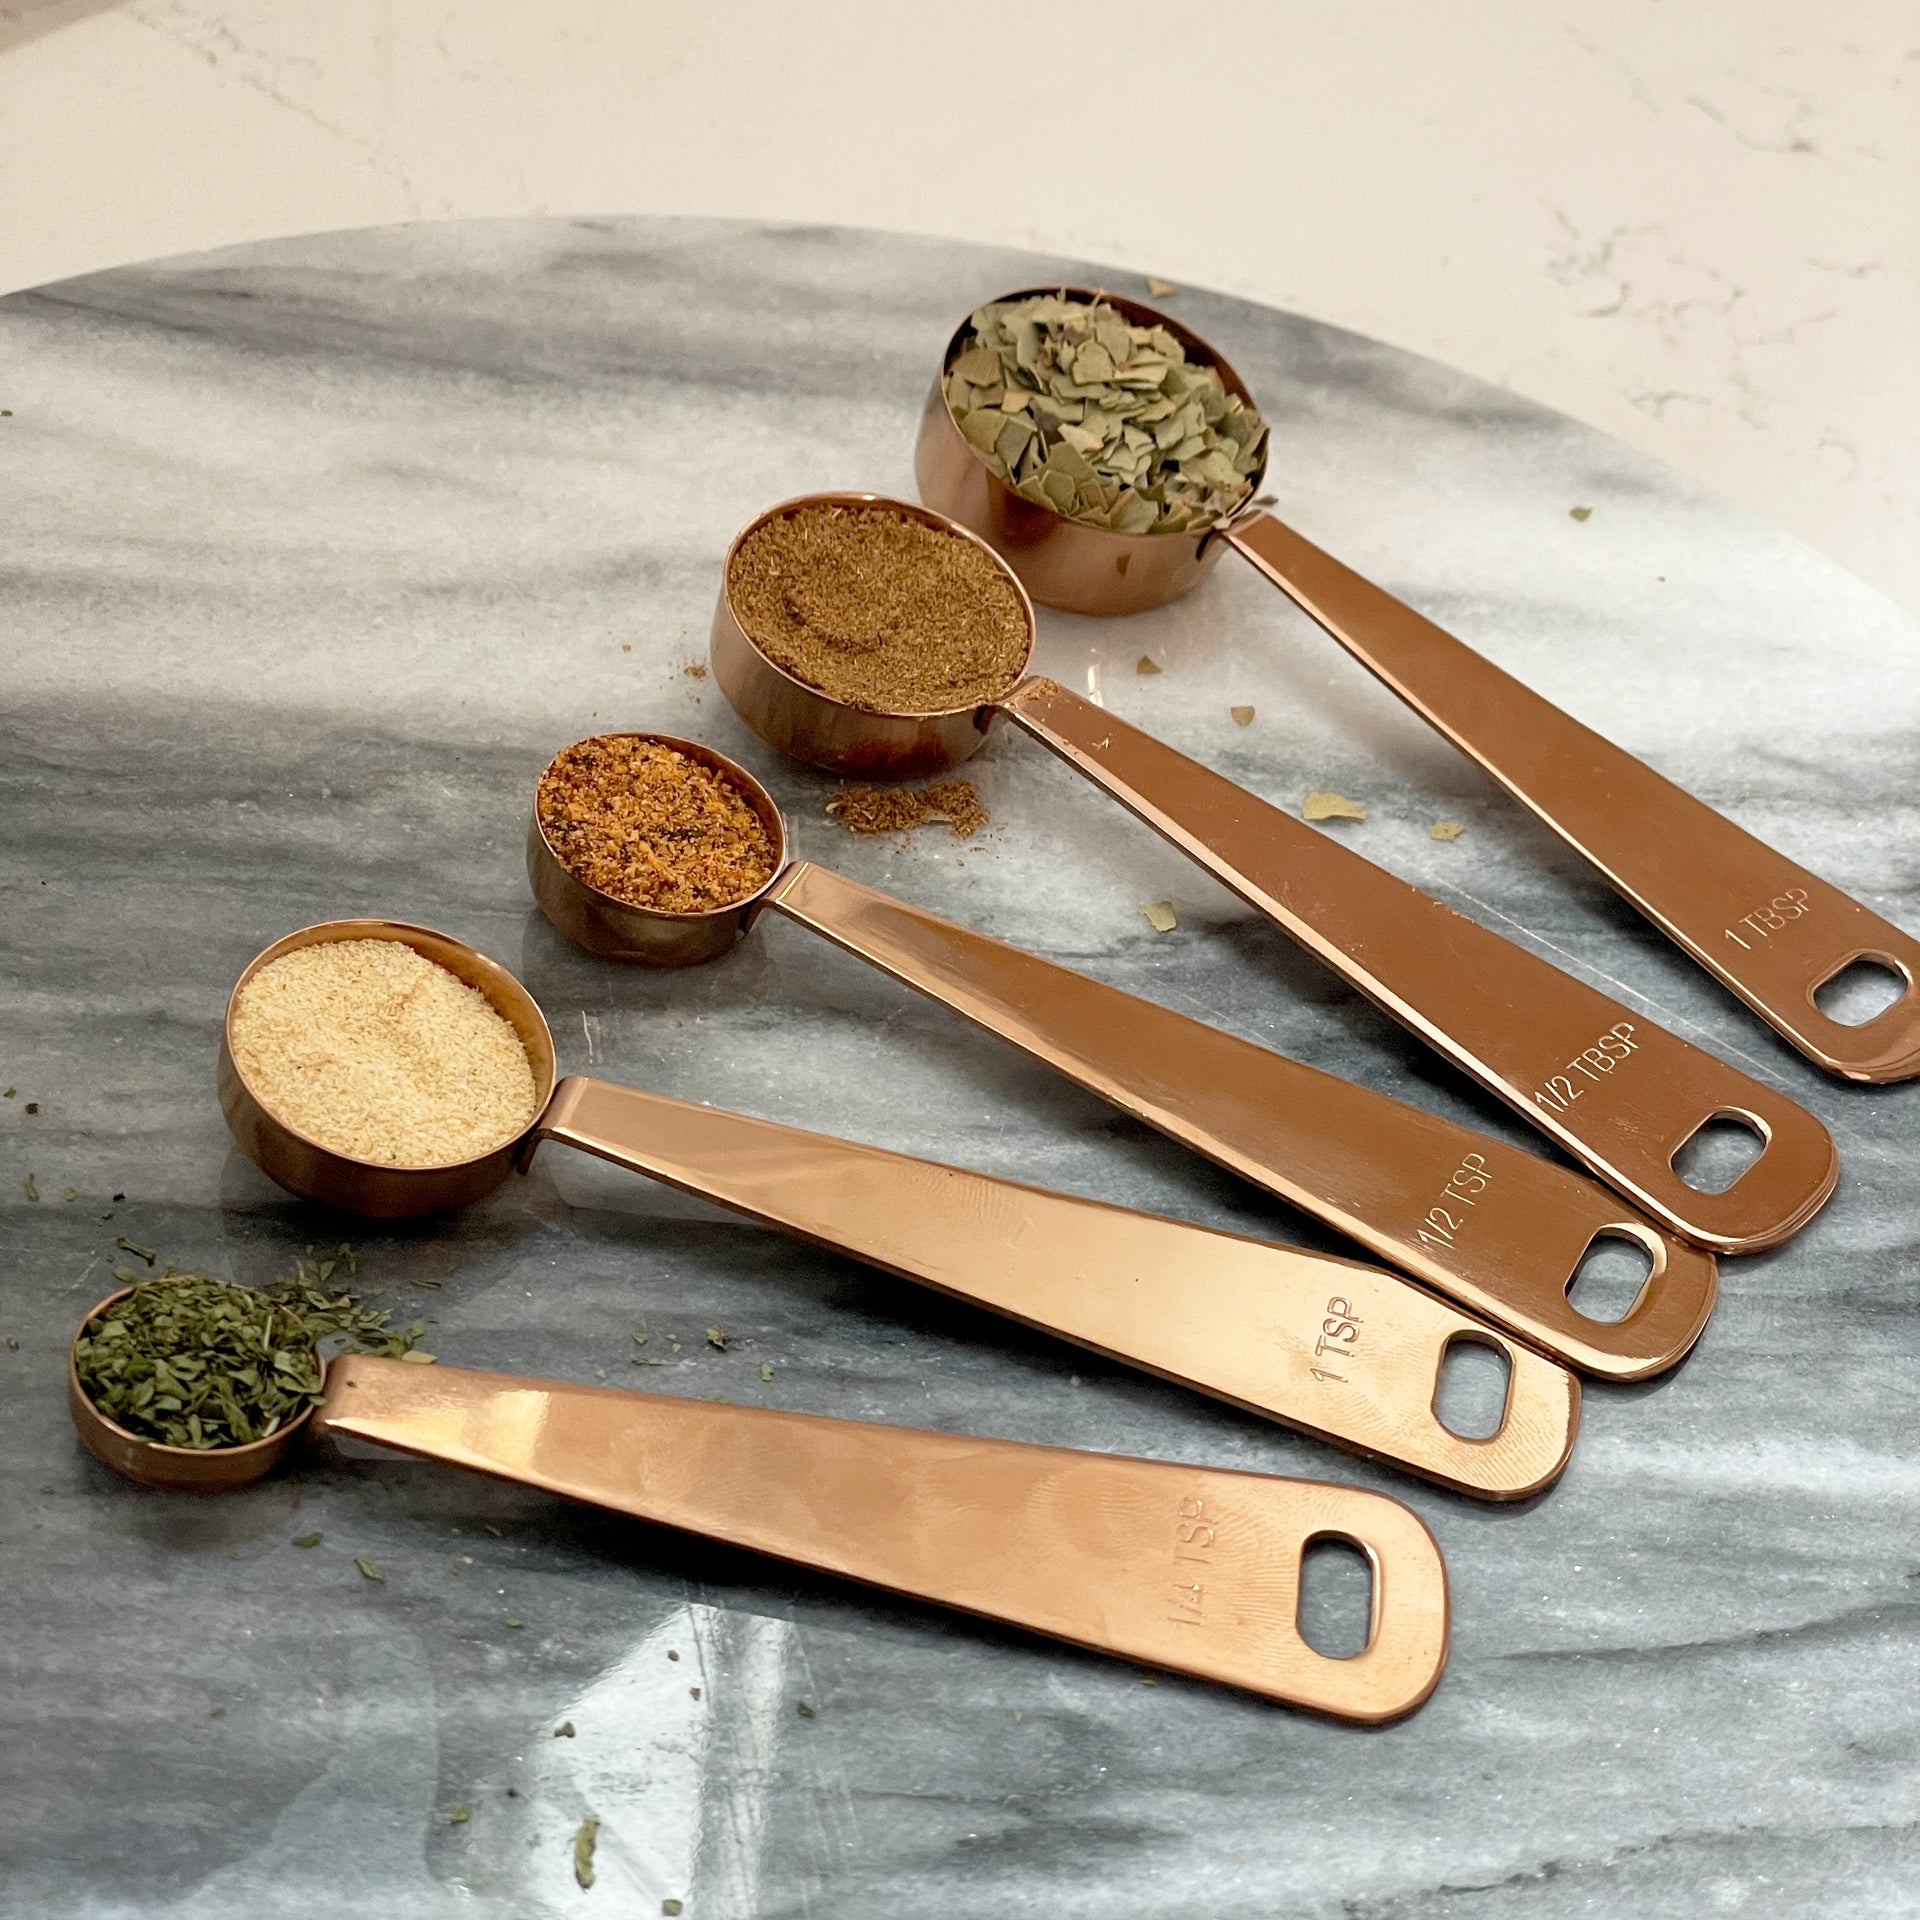 97 Best MEASURING SPOONS ideas  measuring spoons, measuring cups & spoons,  spoon